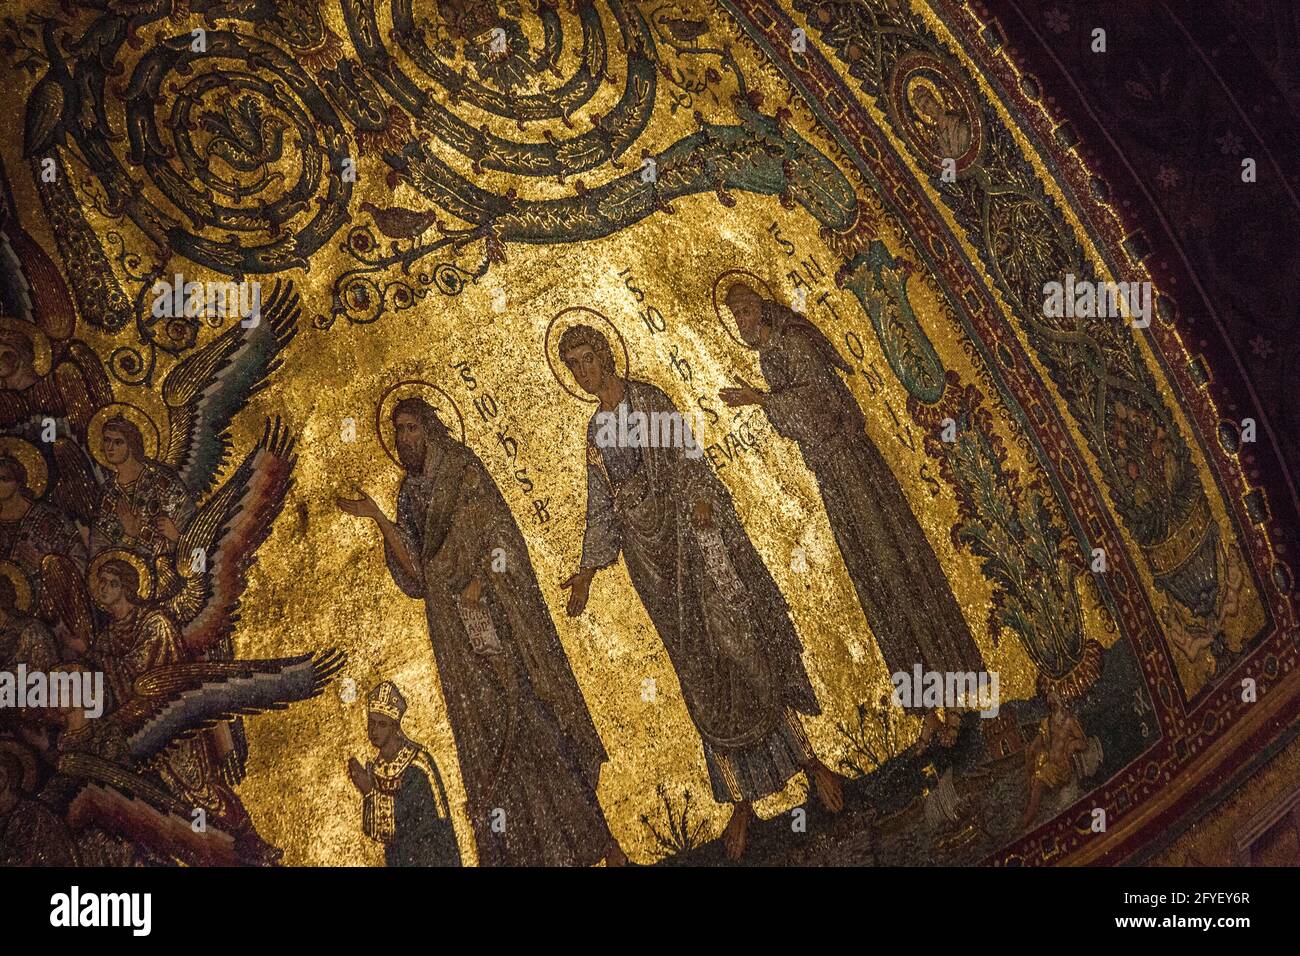 Golden inlaid mosaic closeup inside the Basilica di Santa Maria Maggiore in Rome, Italy Stock Photo